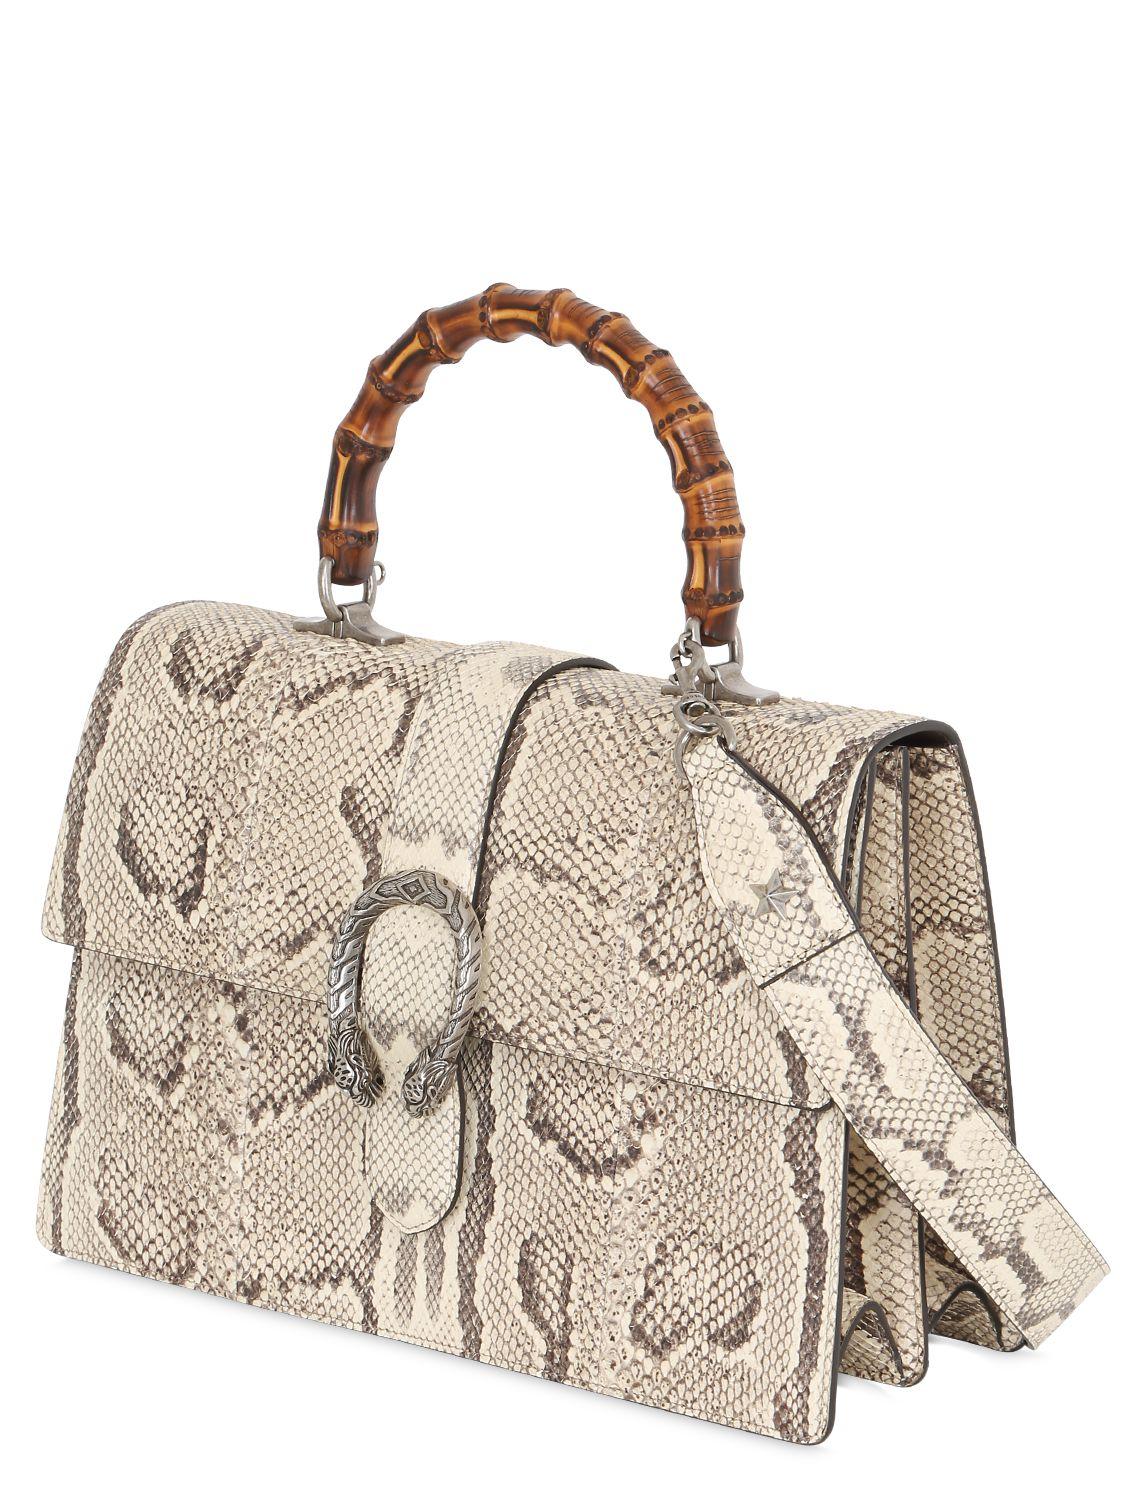 Gucci Large Dionysus Python Shoulder Bag in Natural - Lyst